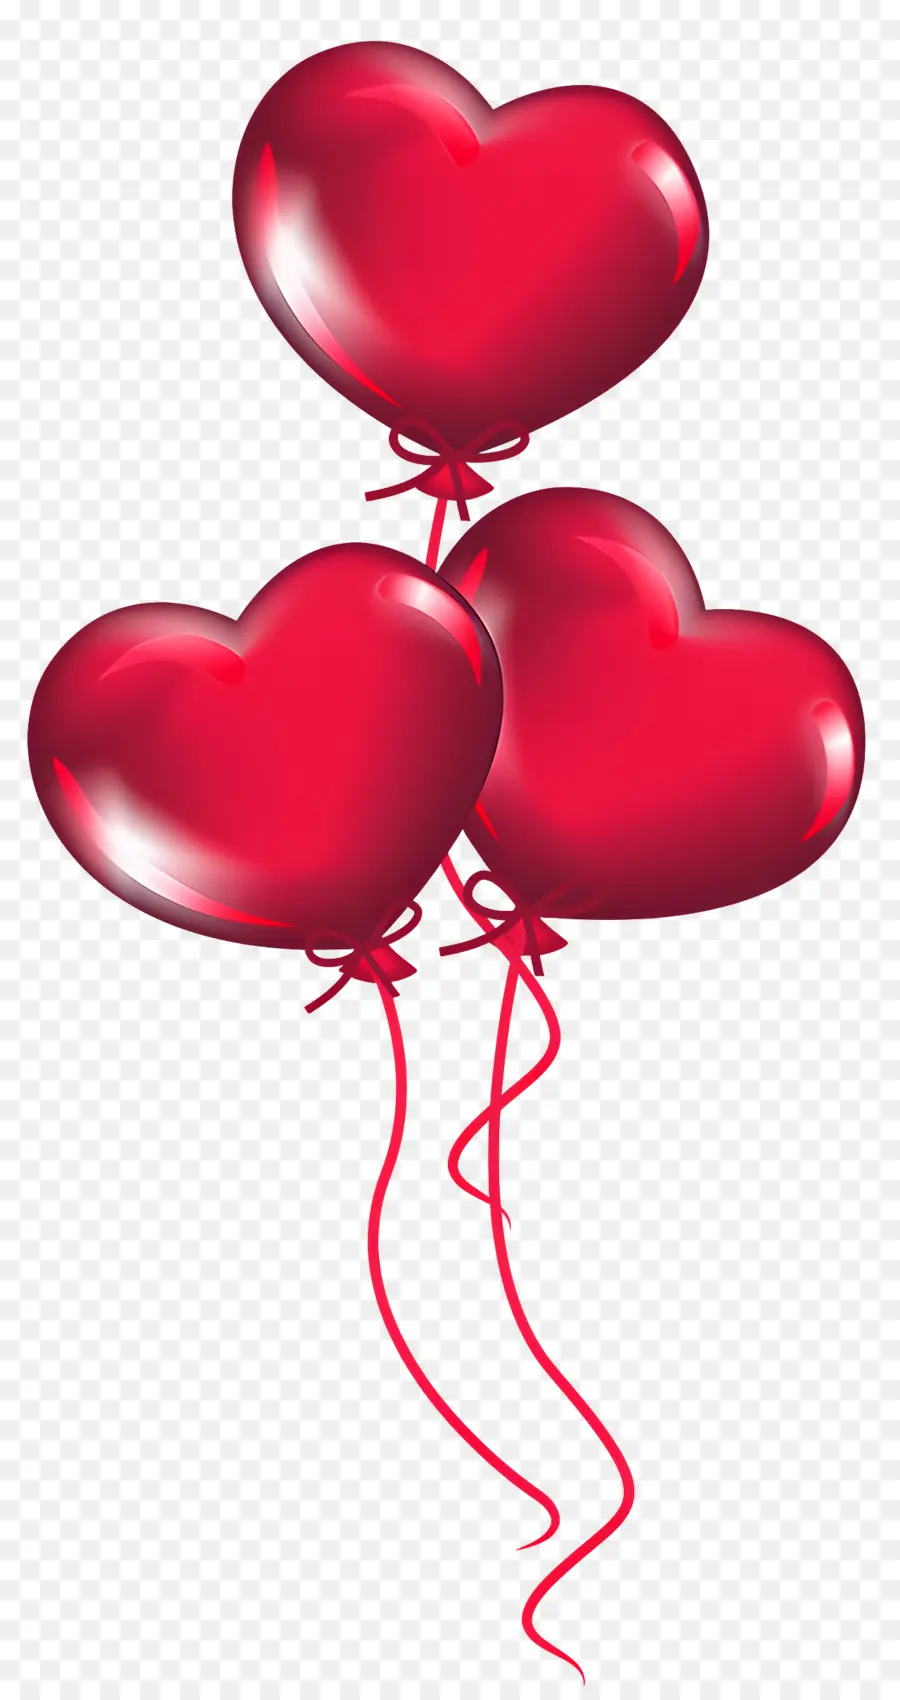 rote Luftballons - Drei herzförmige Luftballons, die mit Band gebunden sind